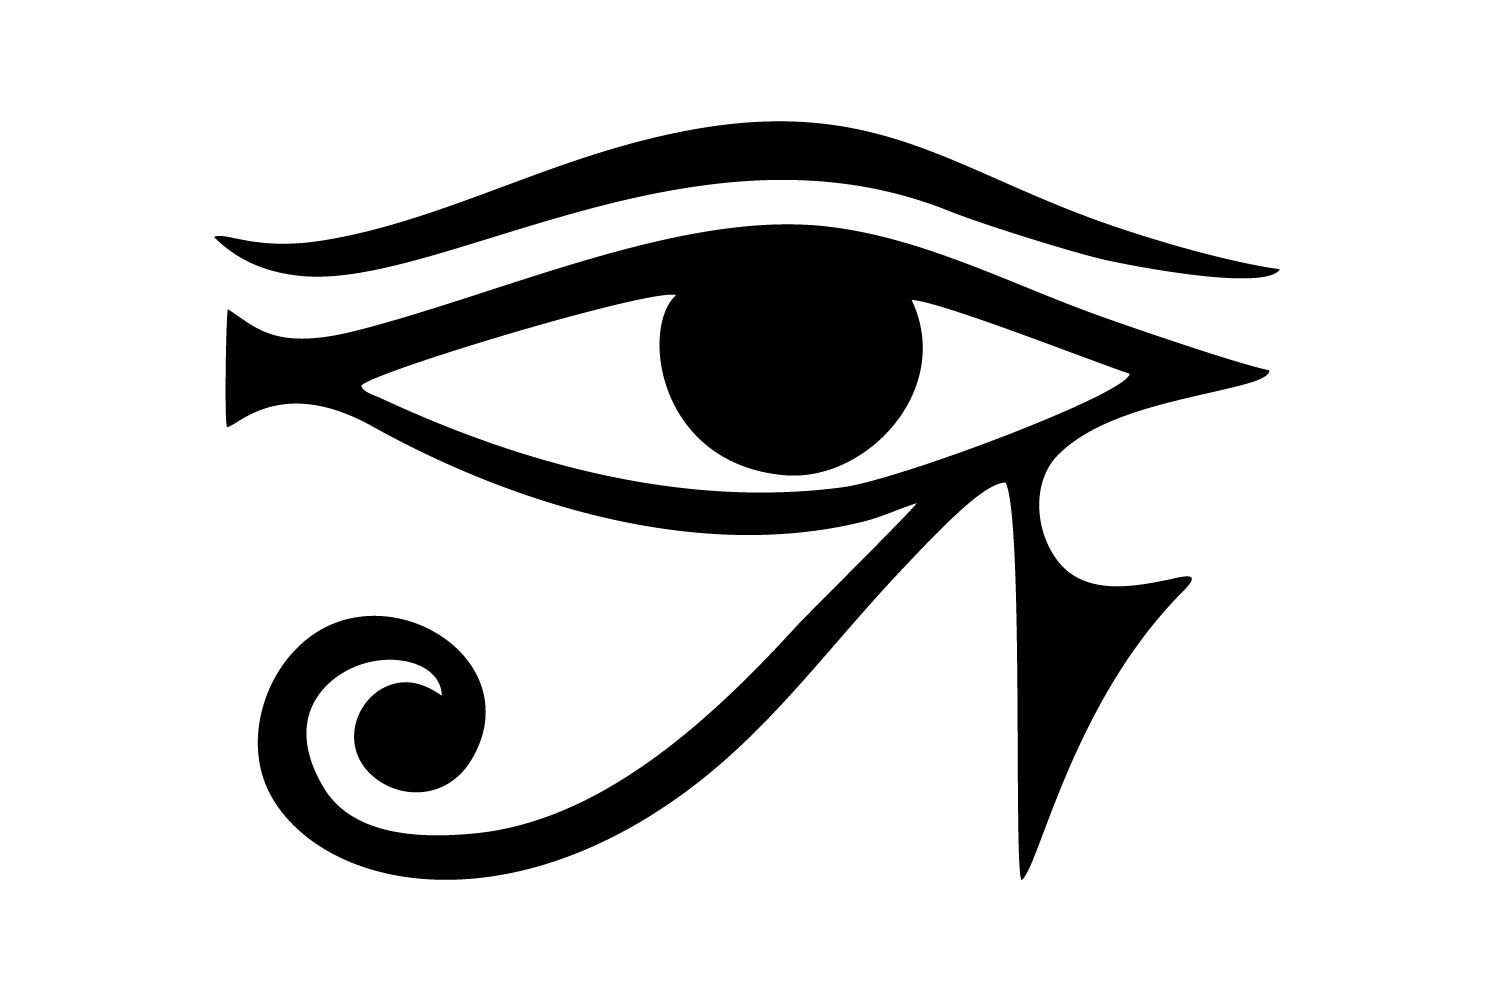 Уаджет (Уджат, также око Ра или глаз Ра)